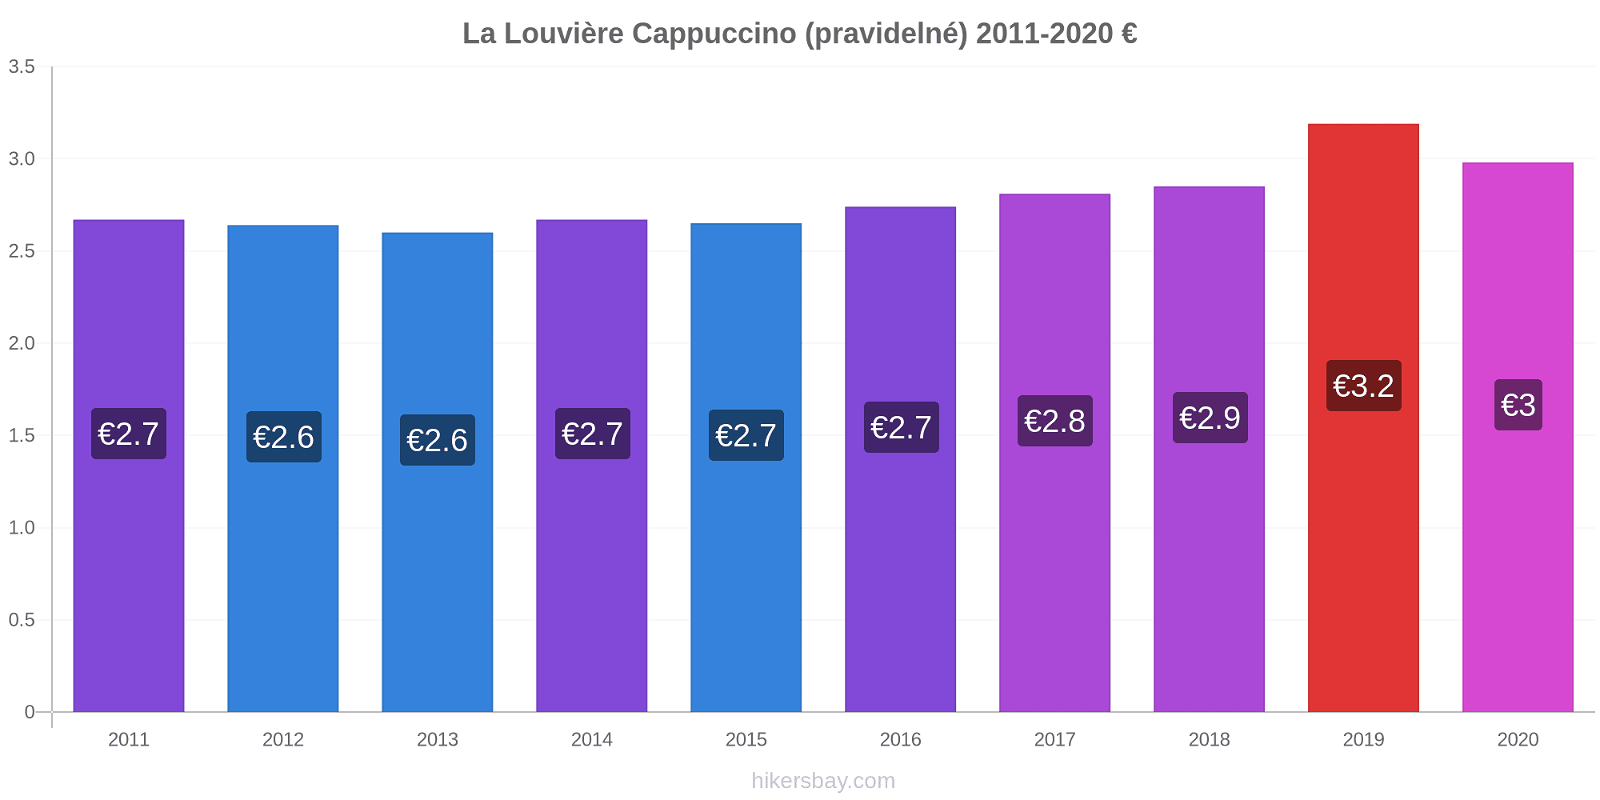 La Louvière změny cen Cappuccino (pravidelné) hikersbay.com